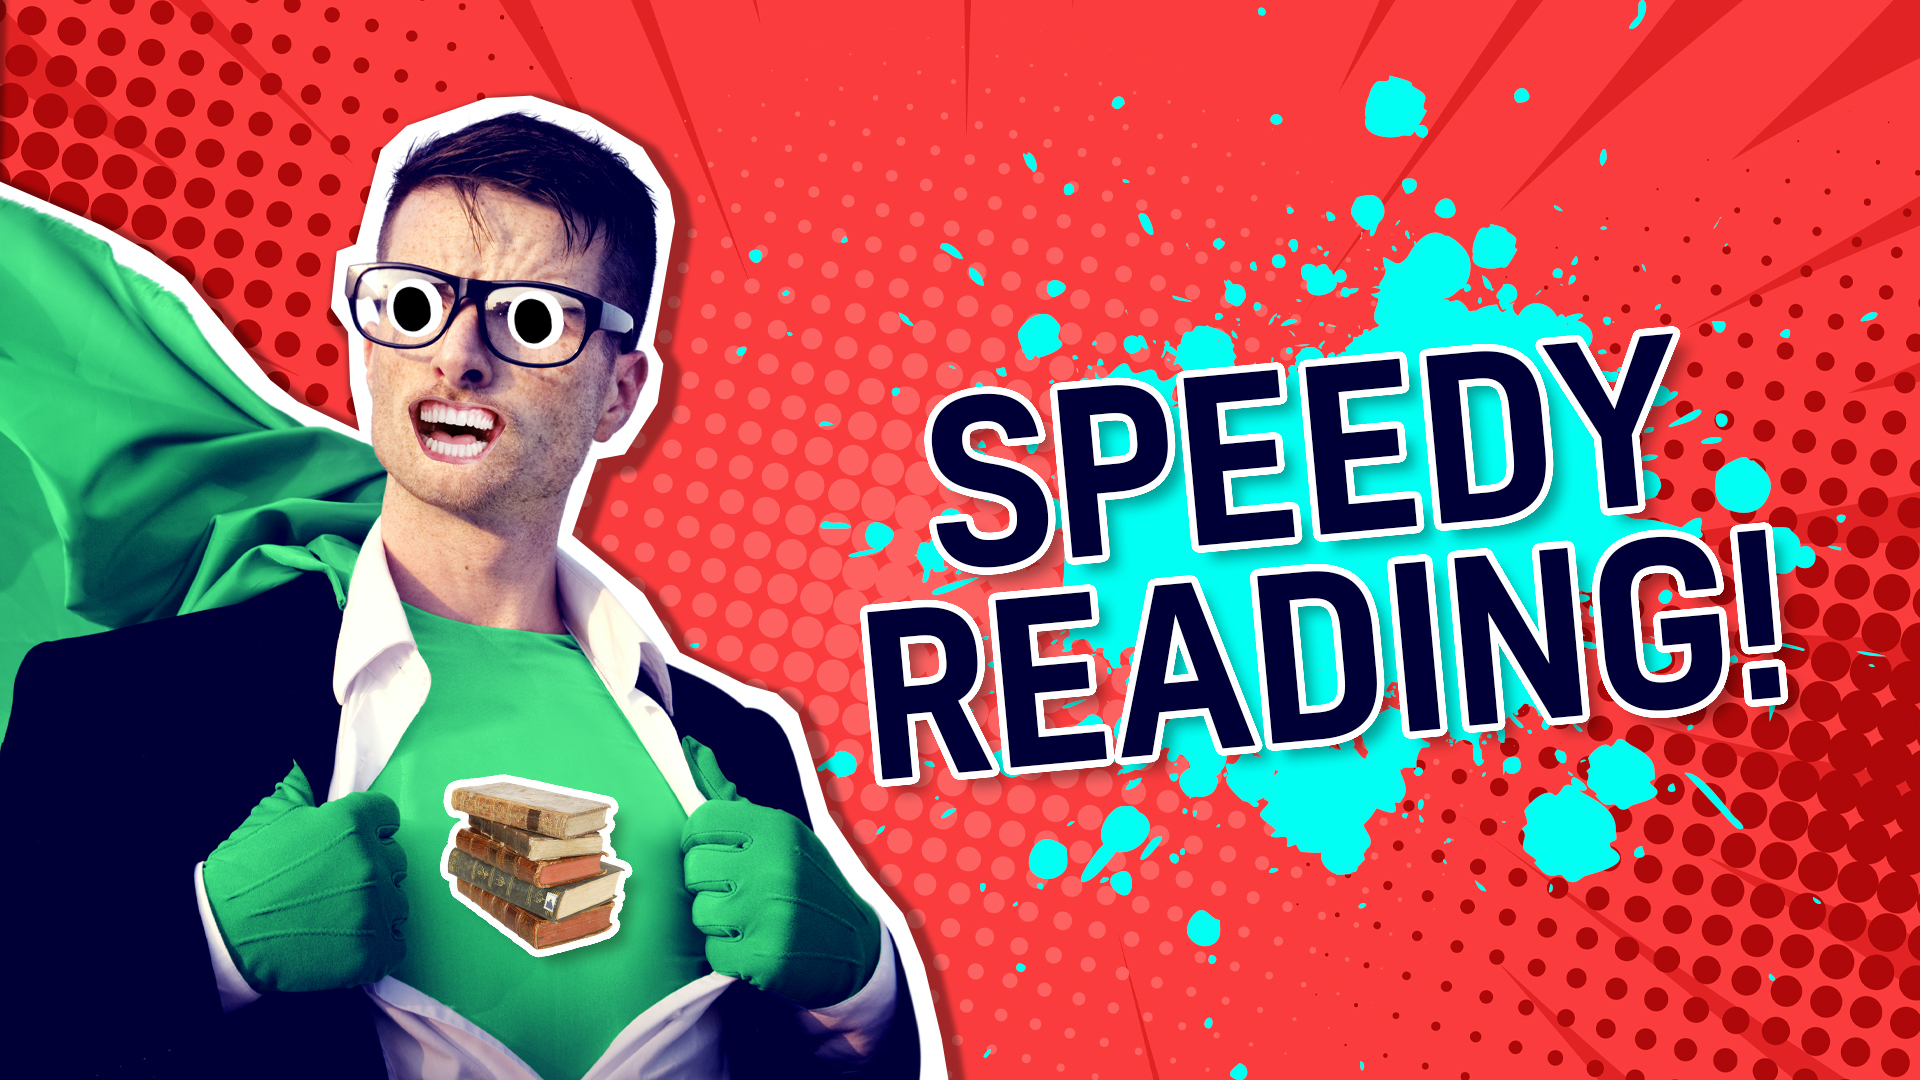 Result: Speedy reading